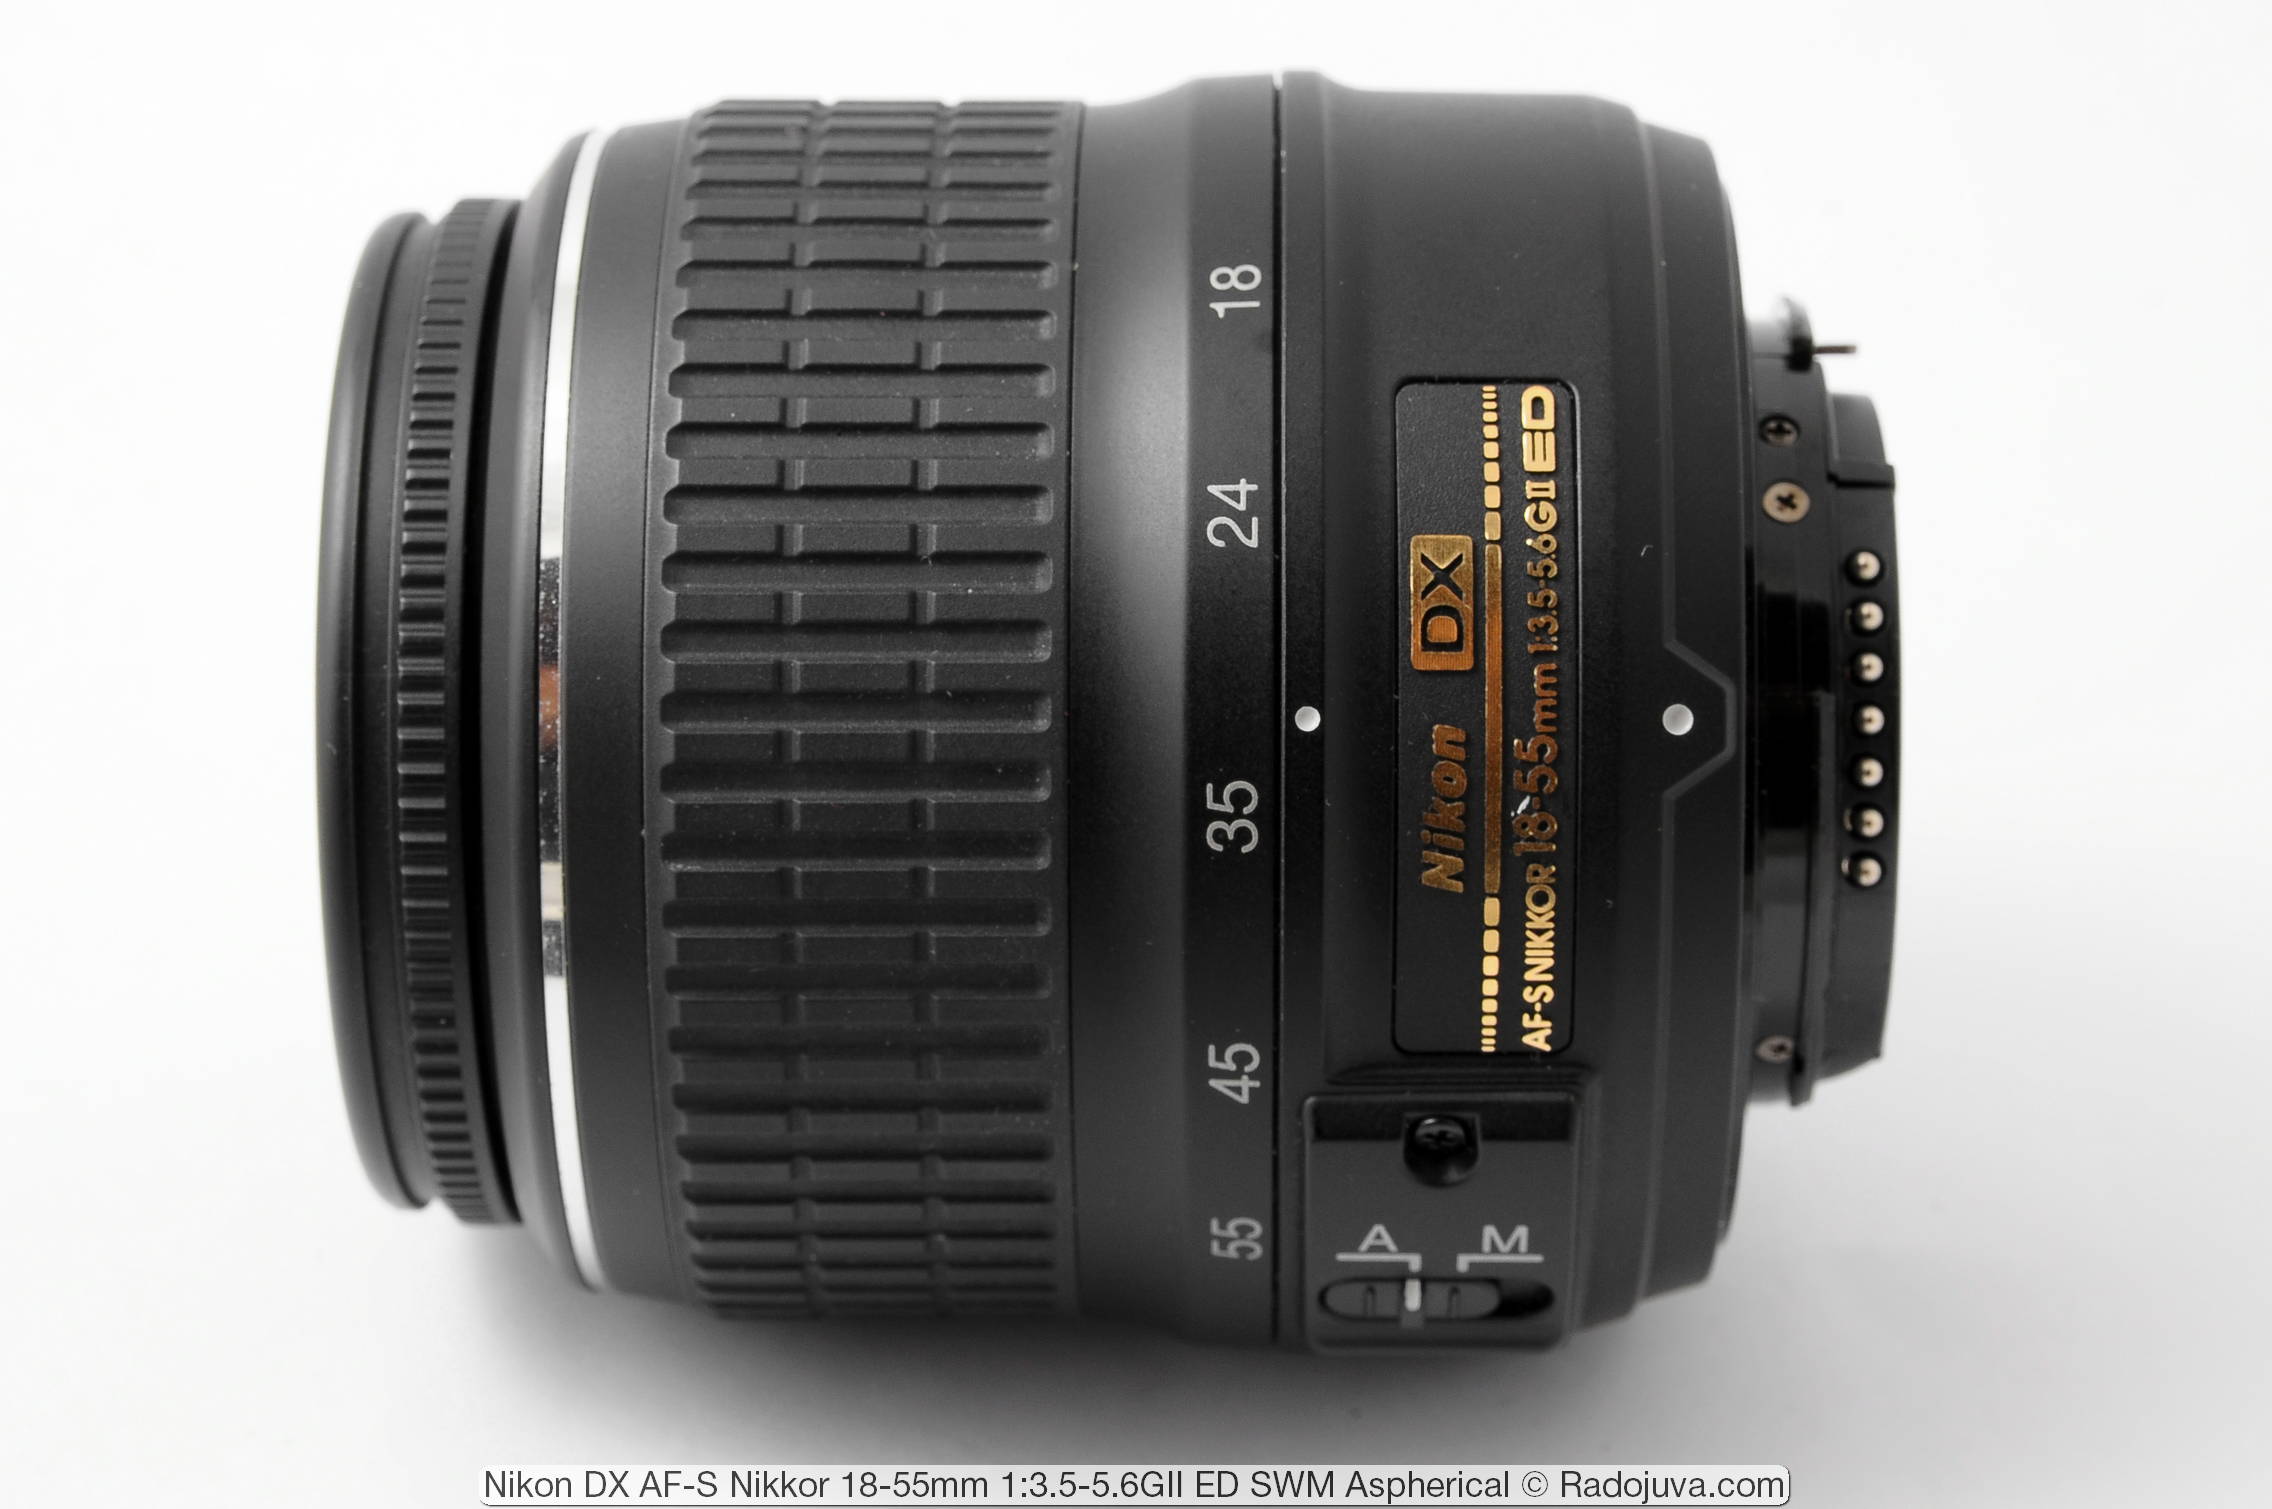 Nikon DX AF-S Nikkor 18-55mm 1: 3.5-5.6GII ED SWM Aspherical